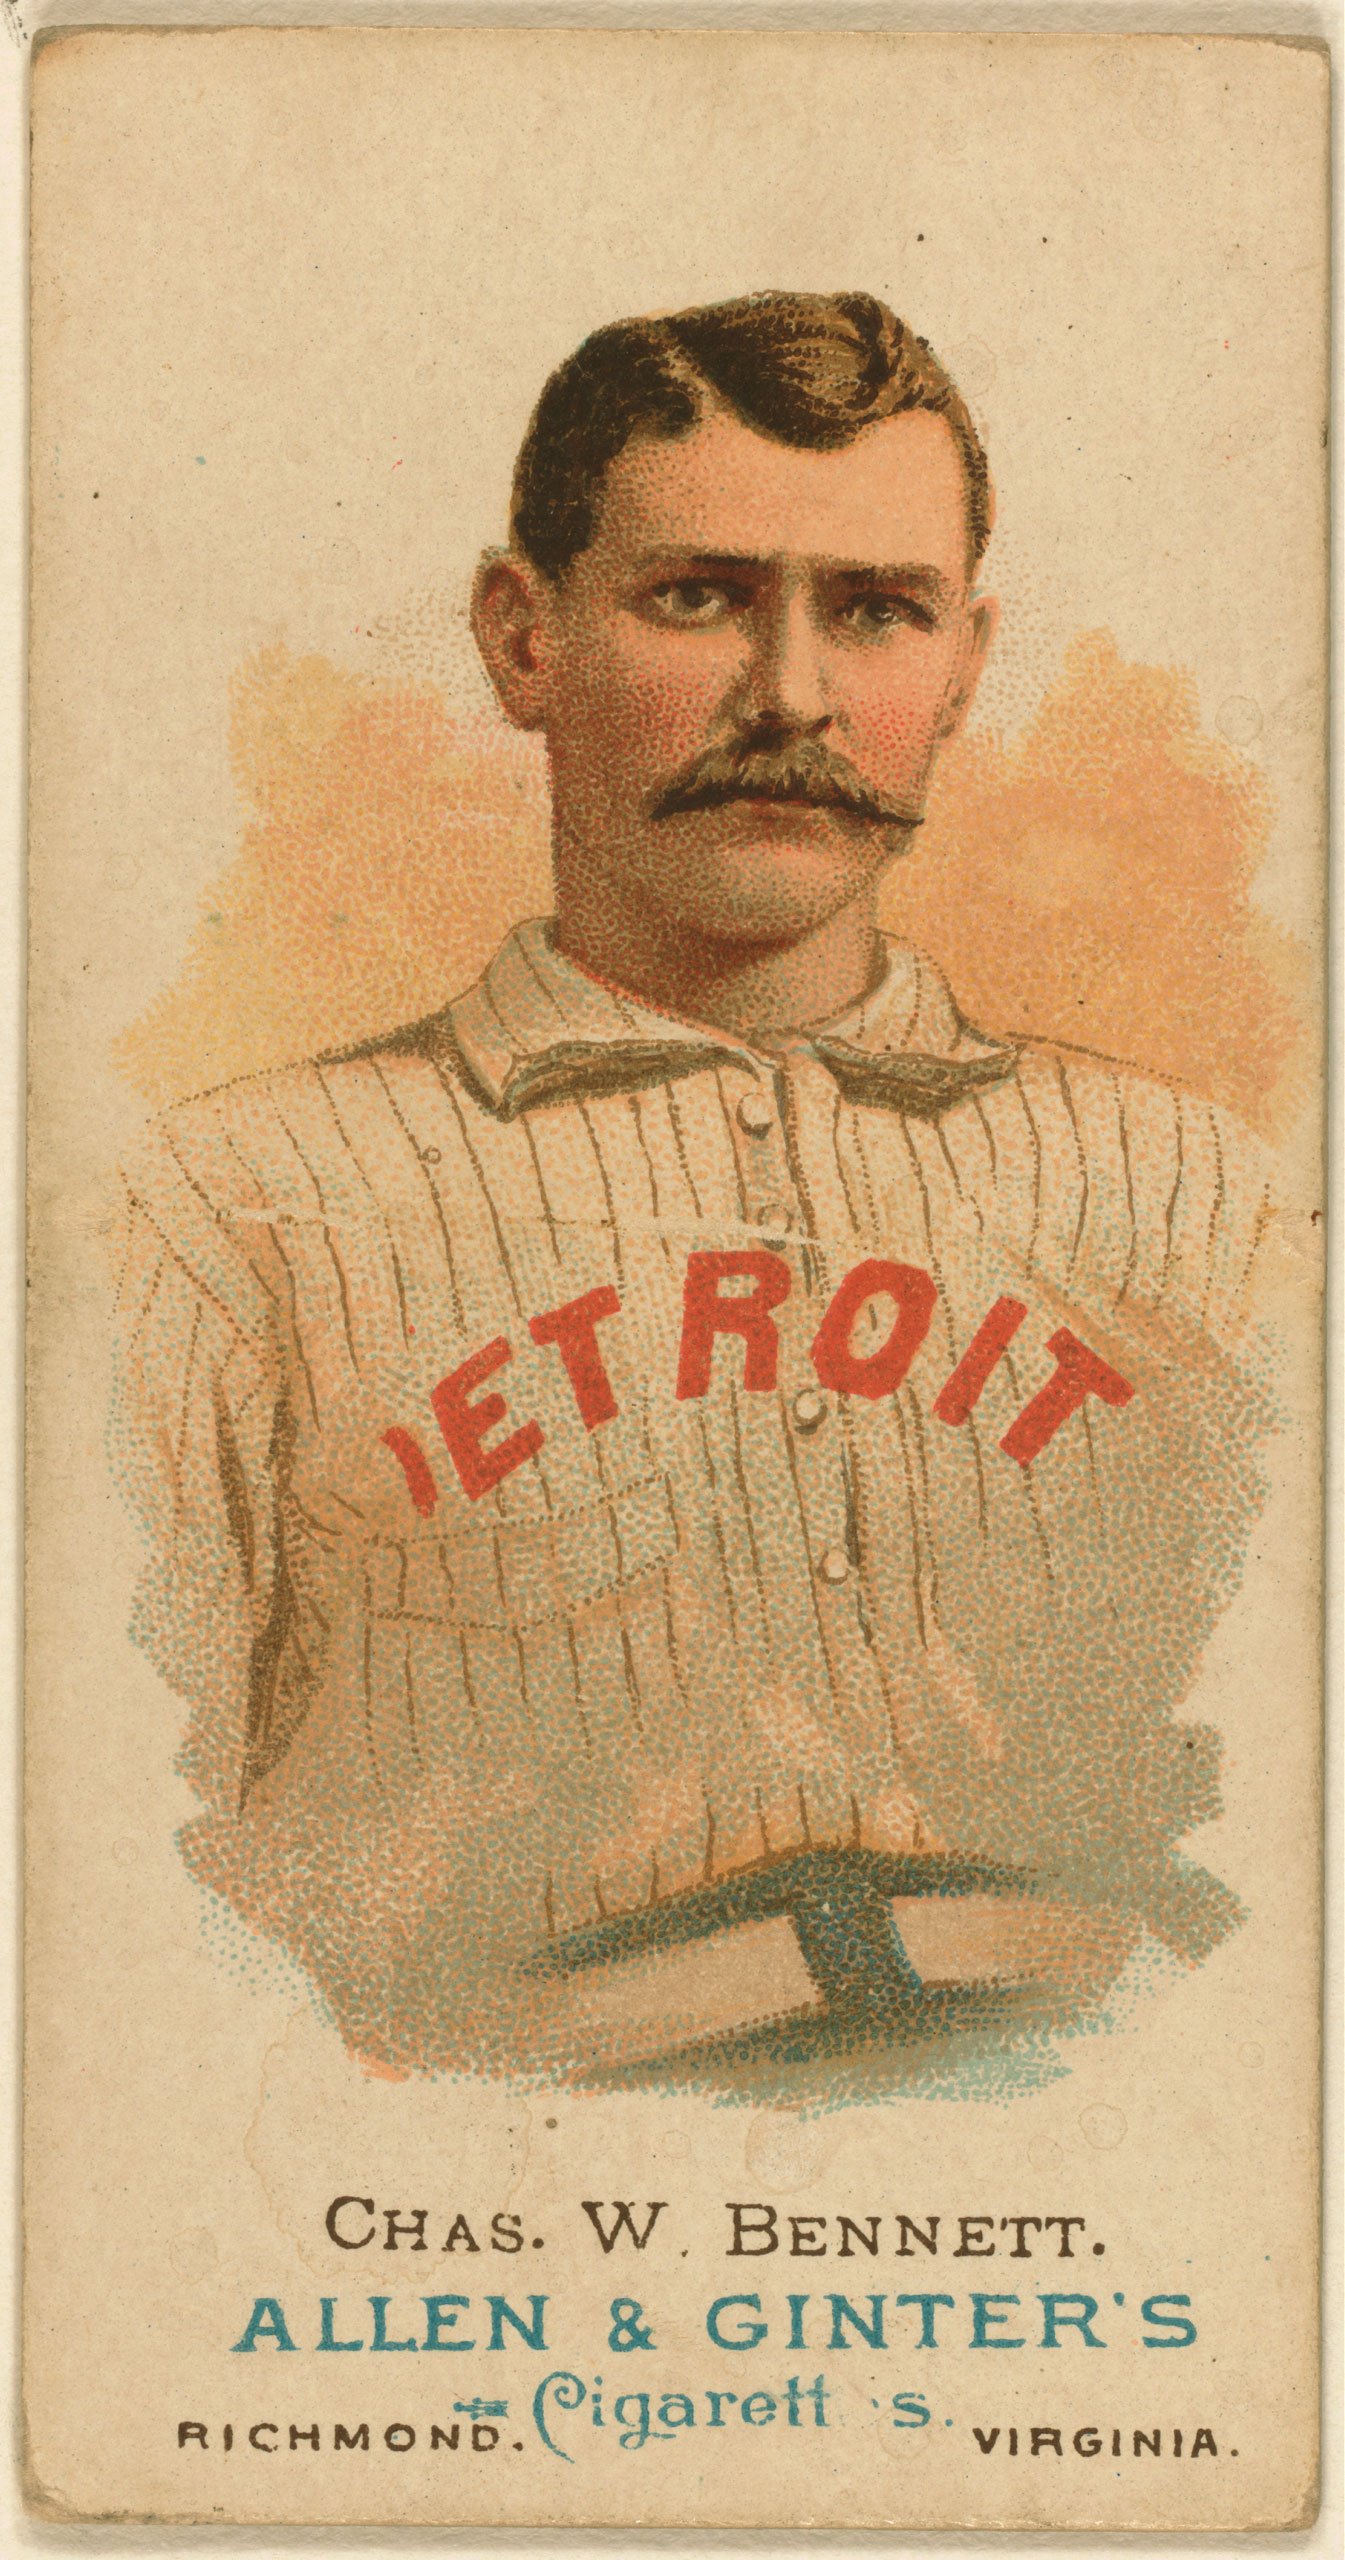 Chas. W. Bennett, Detroit Wolverines, baseball card, 1887.